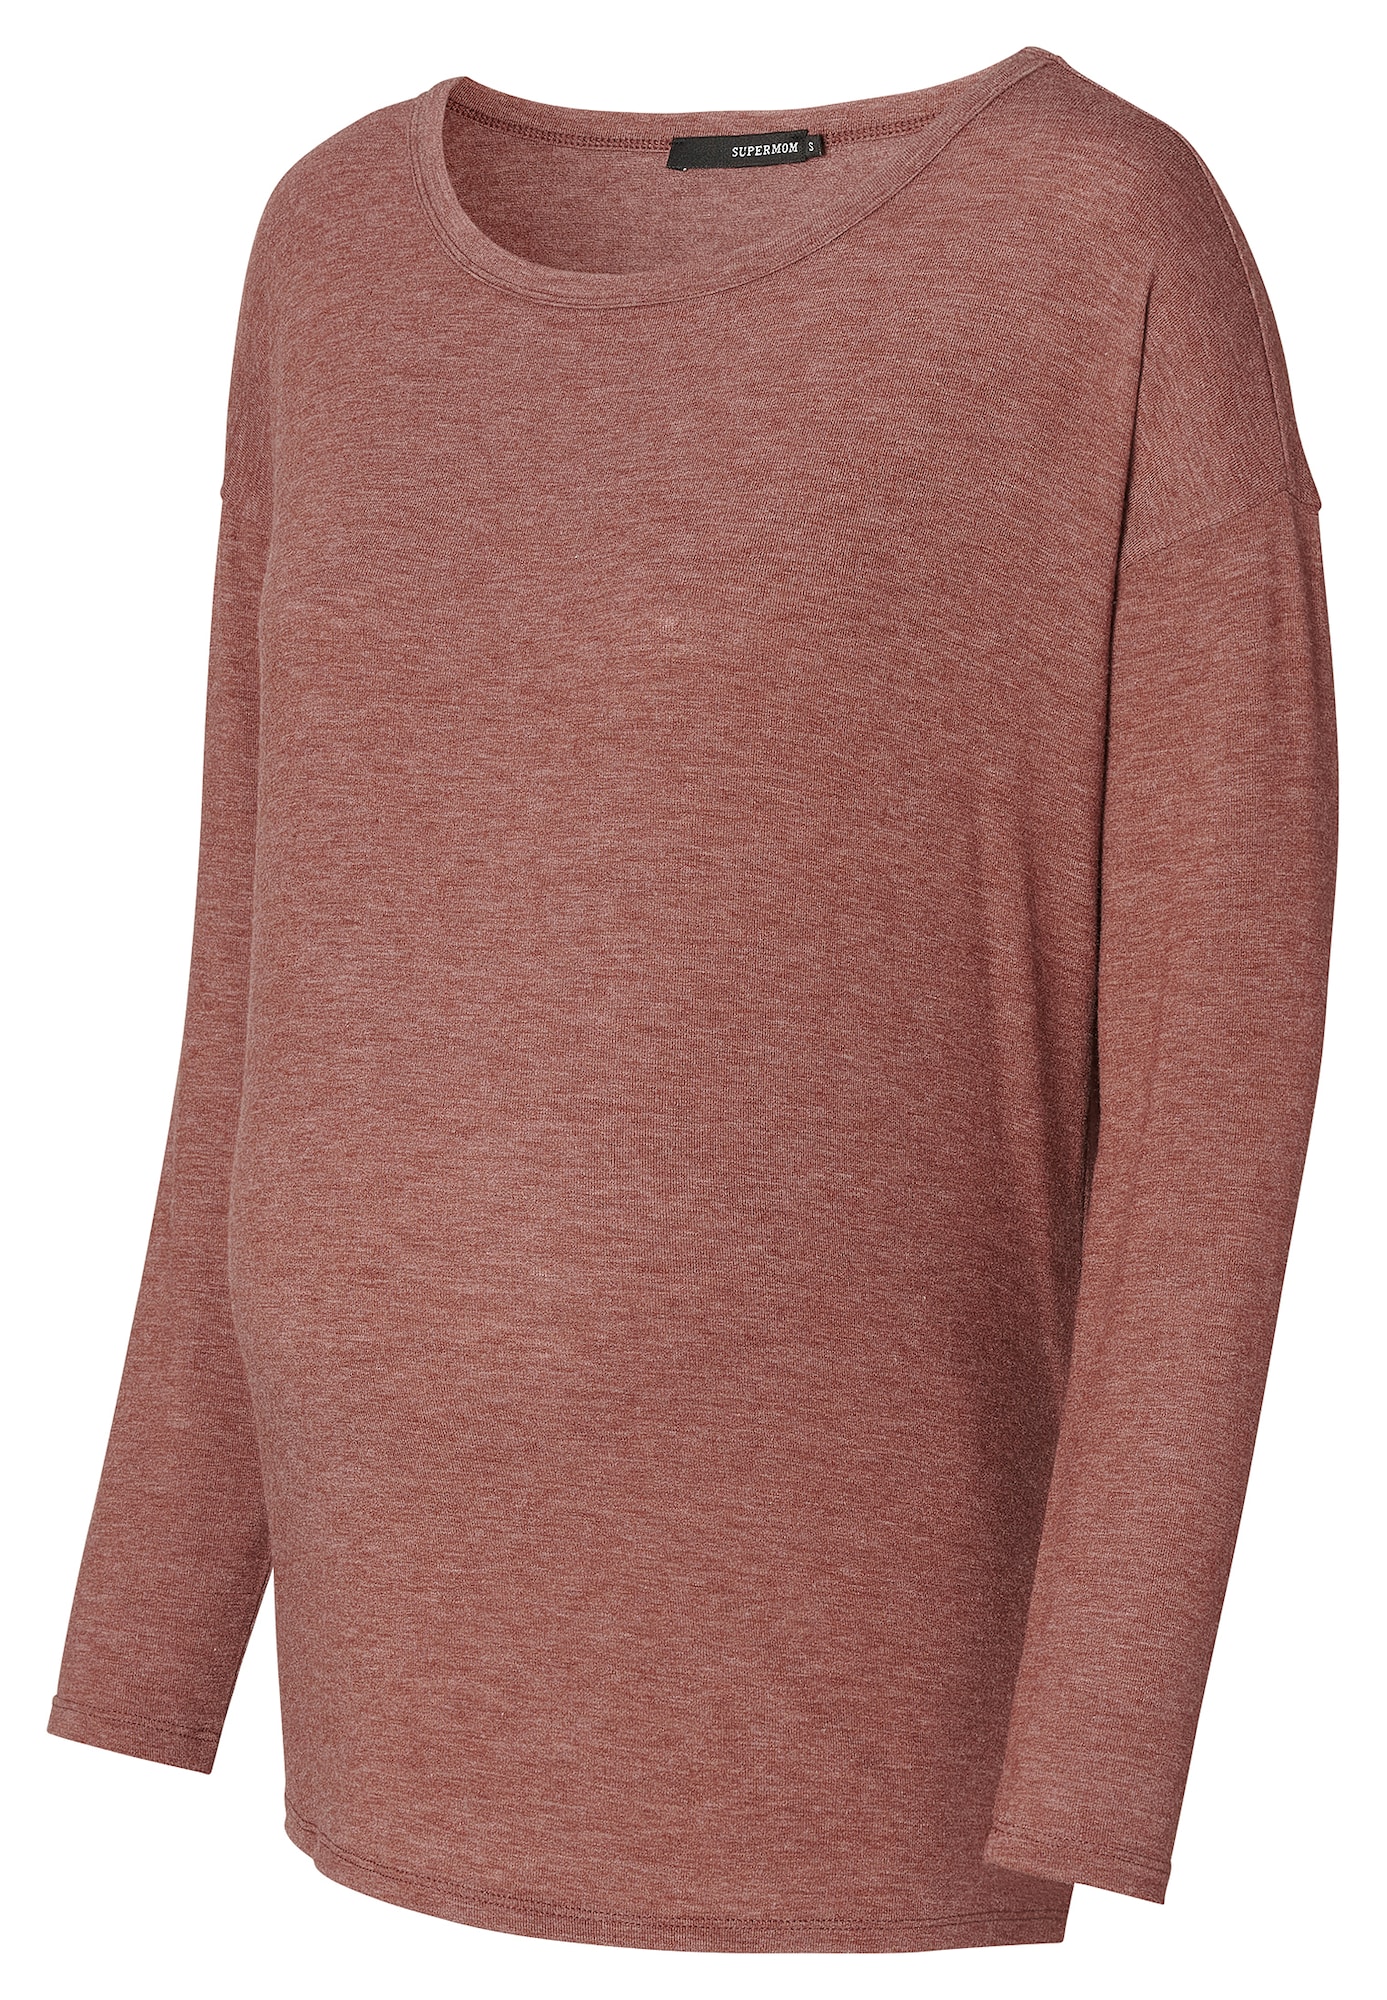 Supermom Marškinėliai 'Bourne' ryškiai rožinė spalva